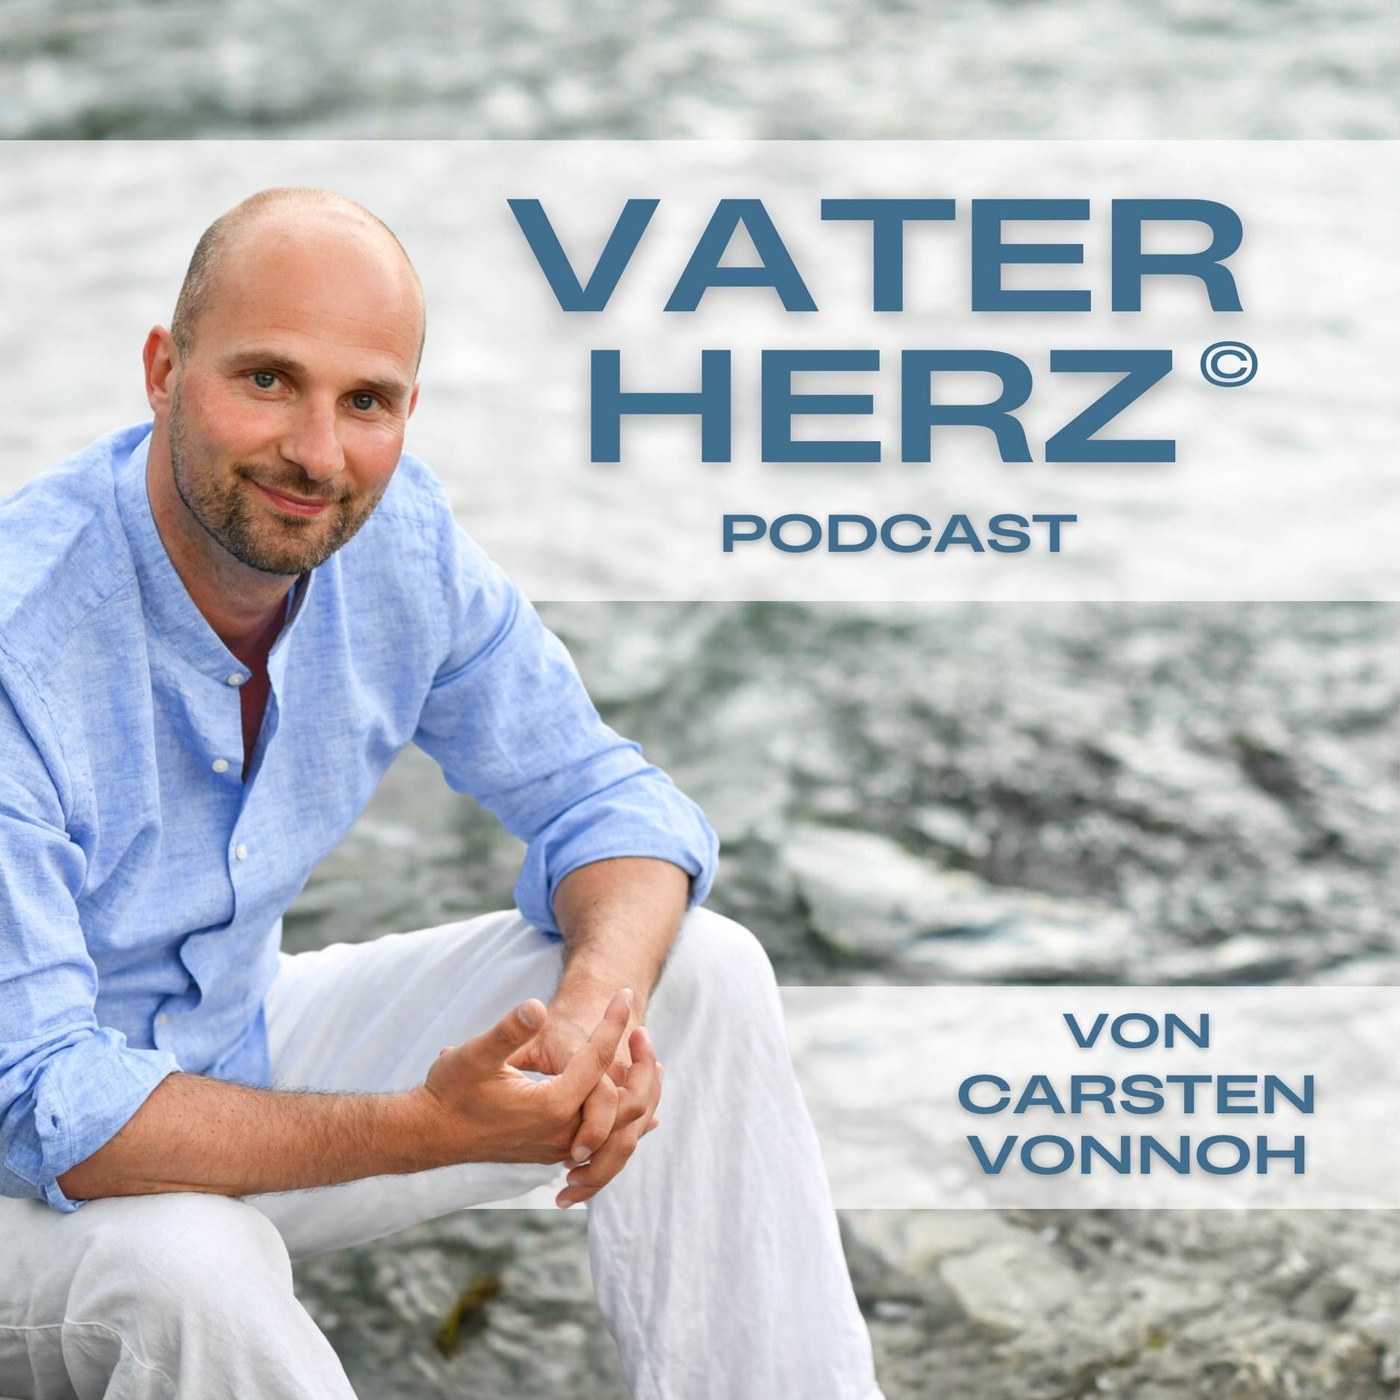 Vaterherz - Podcast von Carsten Vonnoh